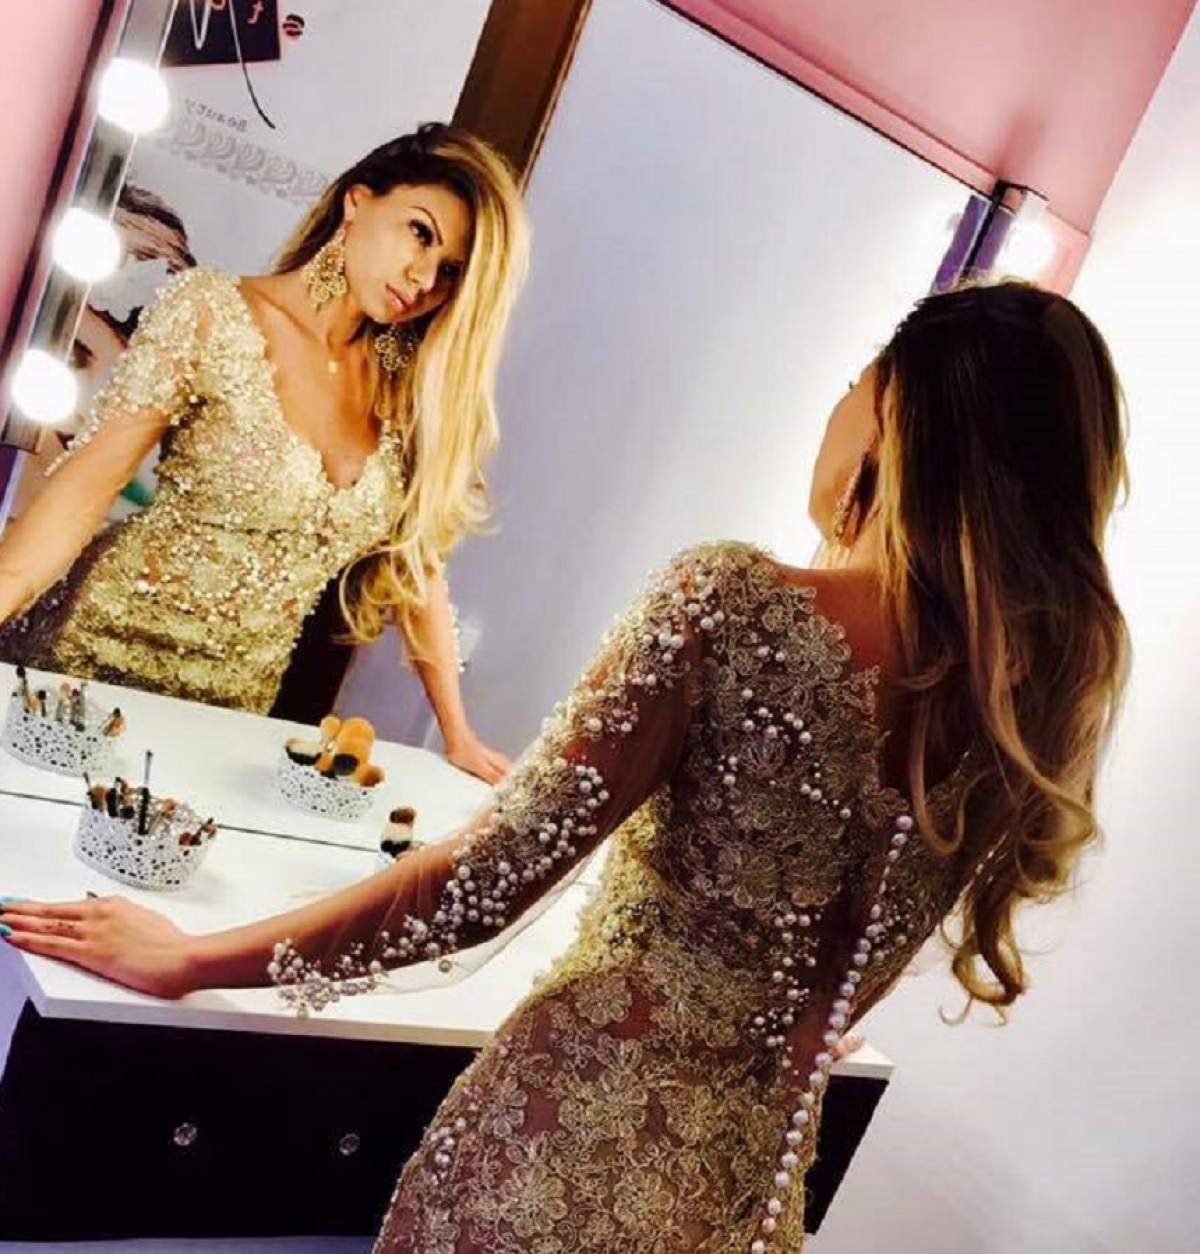 FOTO / Beyonce de România, ce s-a întâmplat acum cu sânii tăi? Felul dubios în care a apărut, după ce şi-a arătat bustul distrus